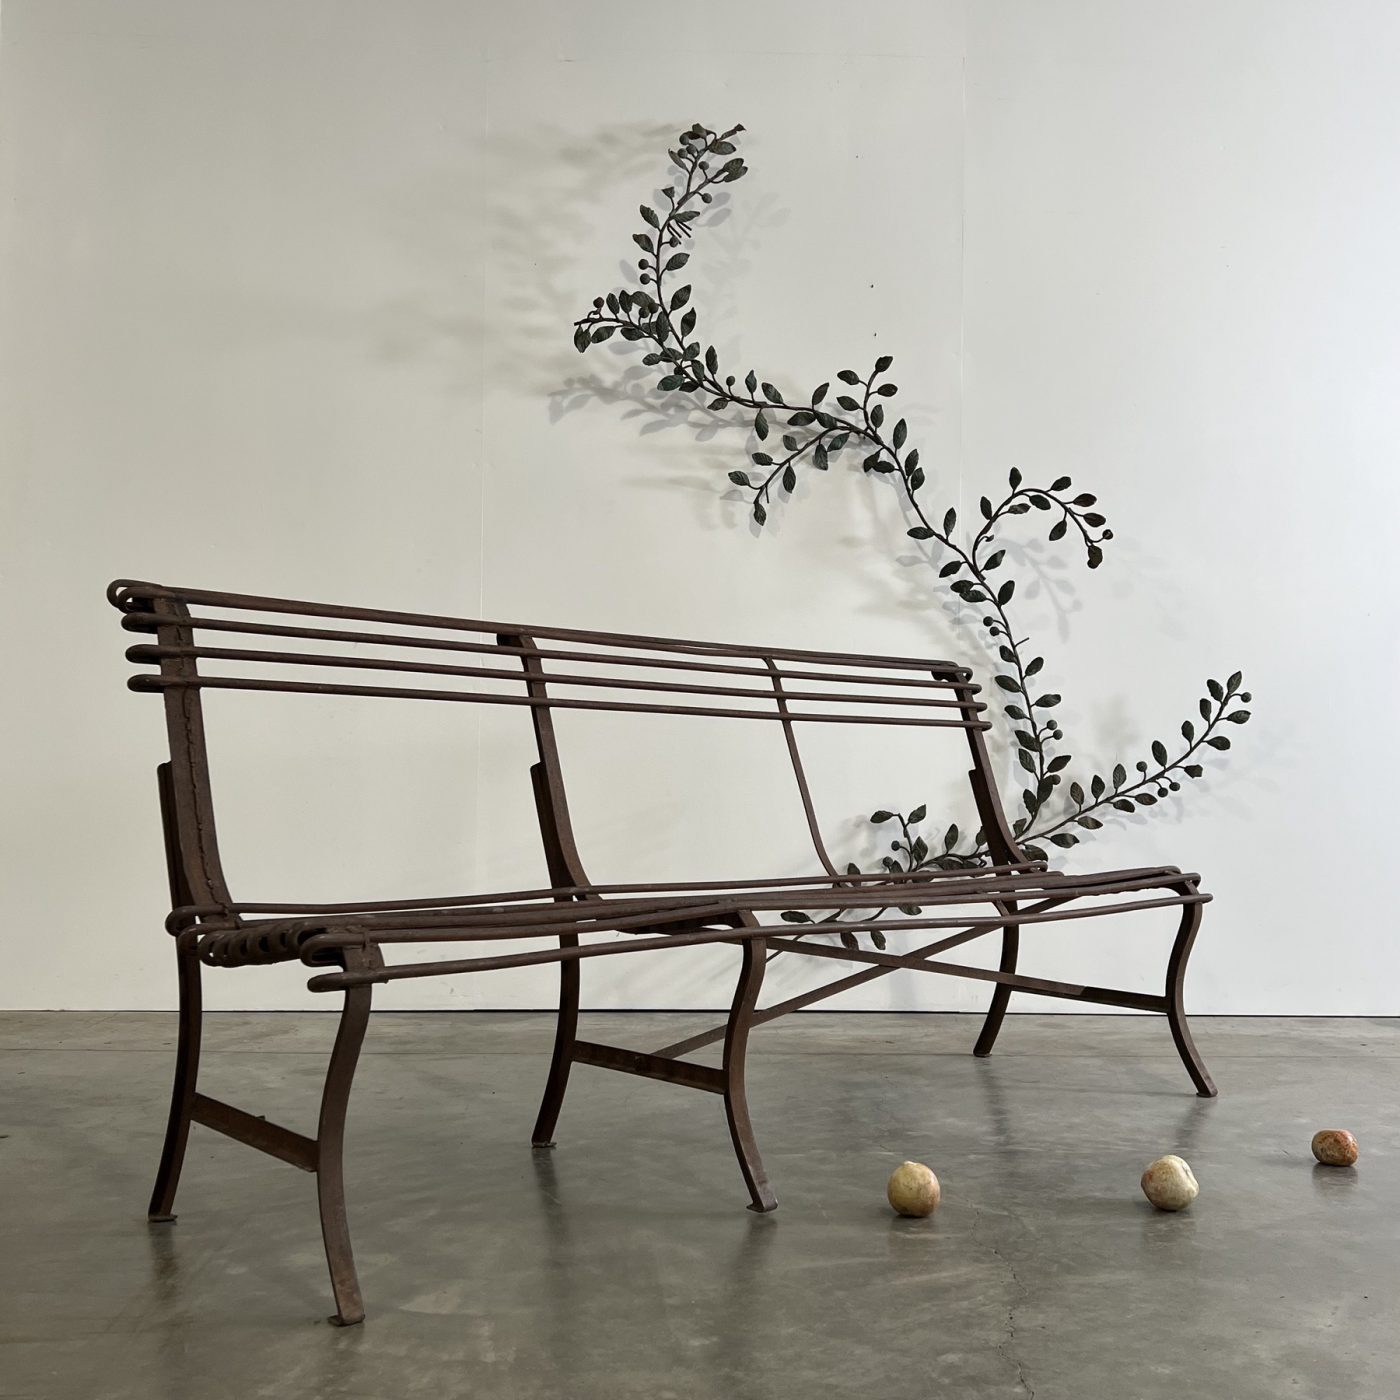 objet-vagabond-garden-bench0004